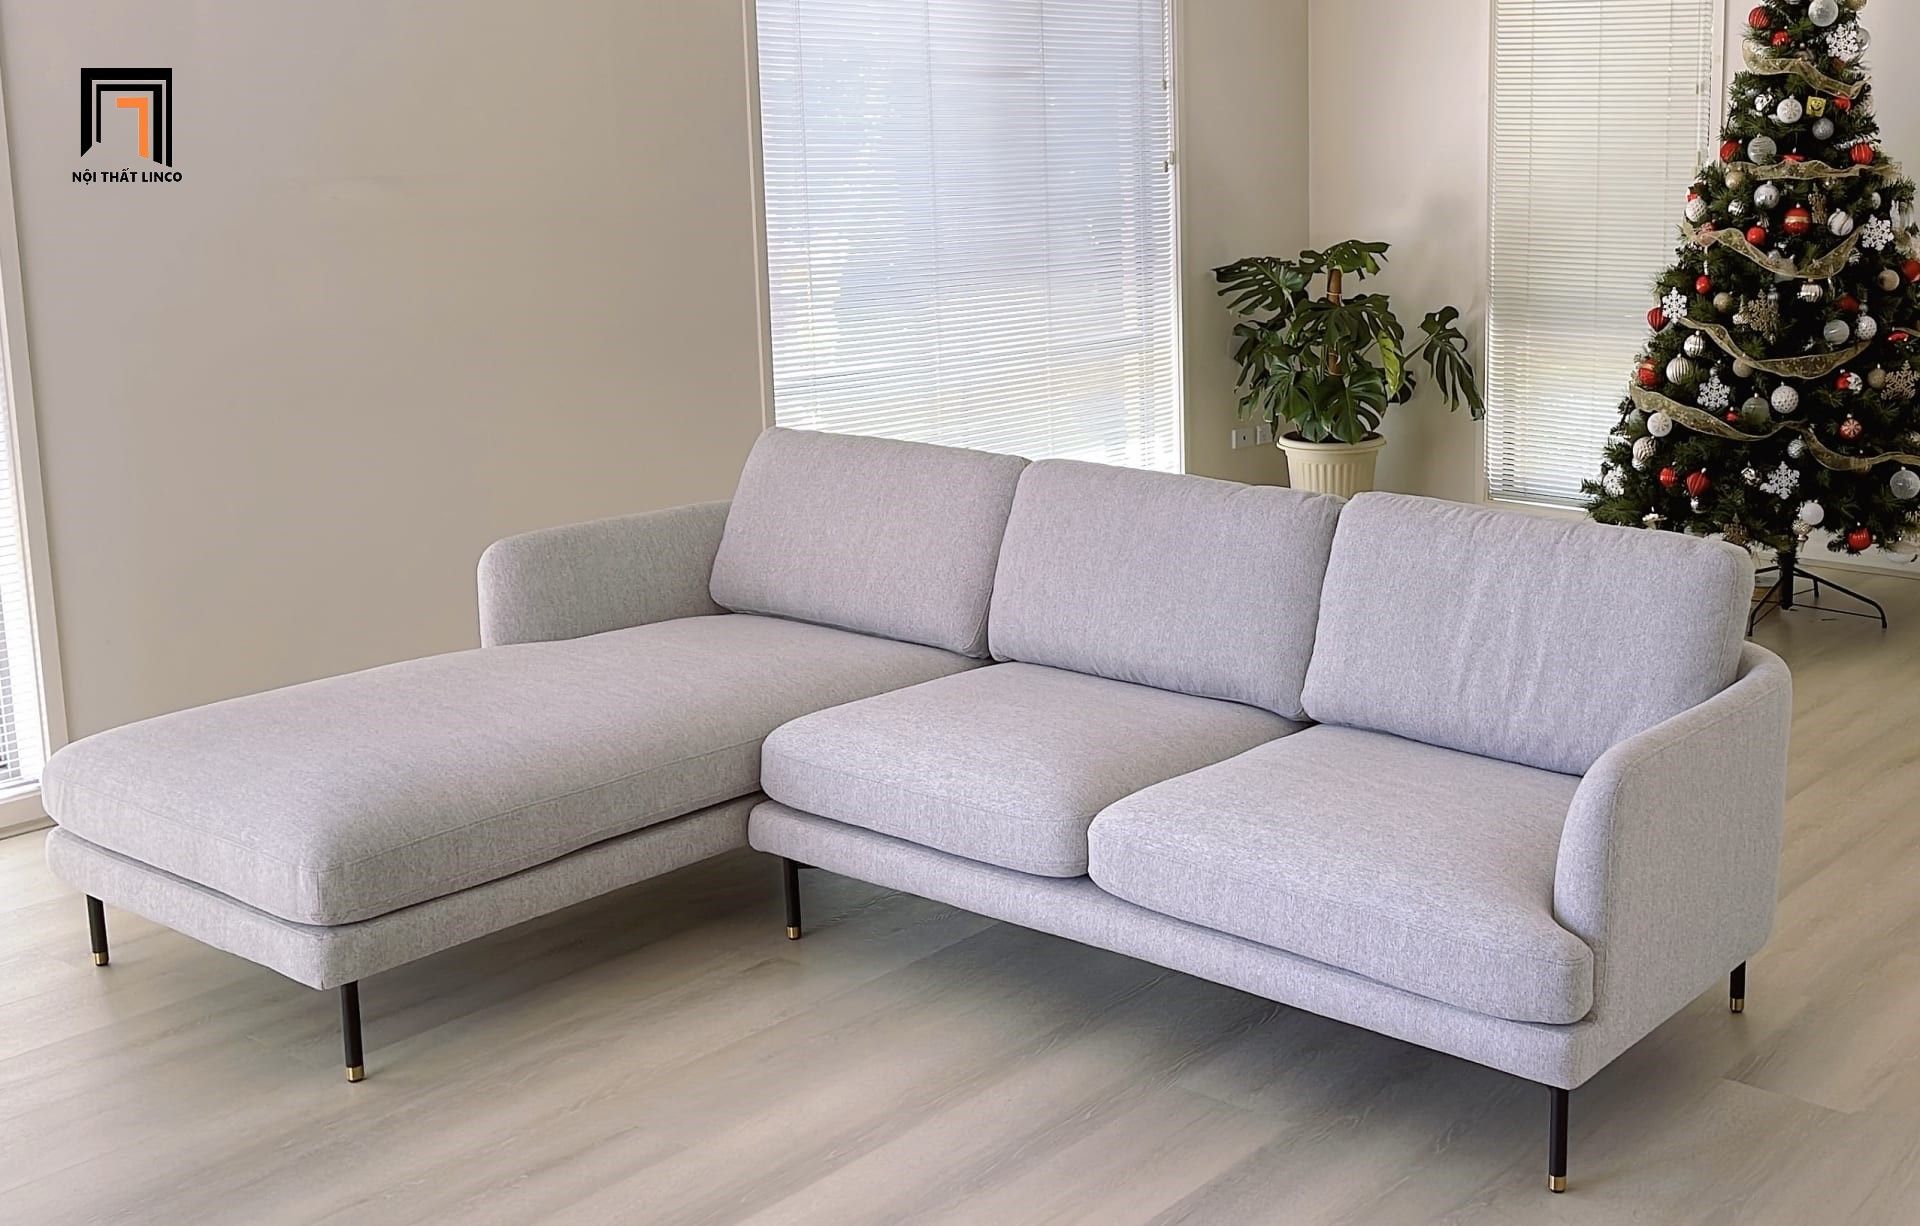  Bộ ghế sofa góc cong GT130 Pebble 2m4 x 1m6 xám trắng 